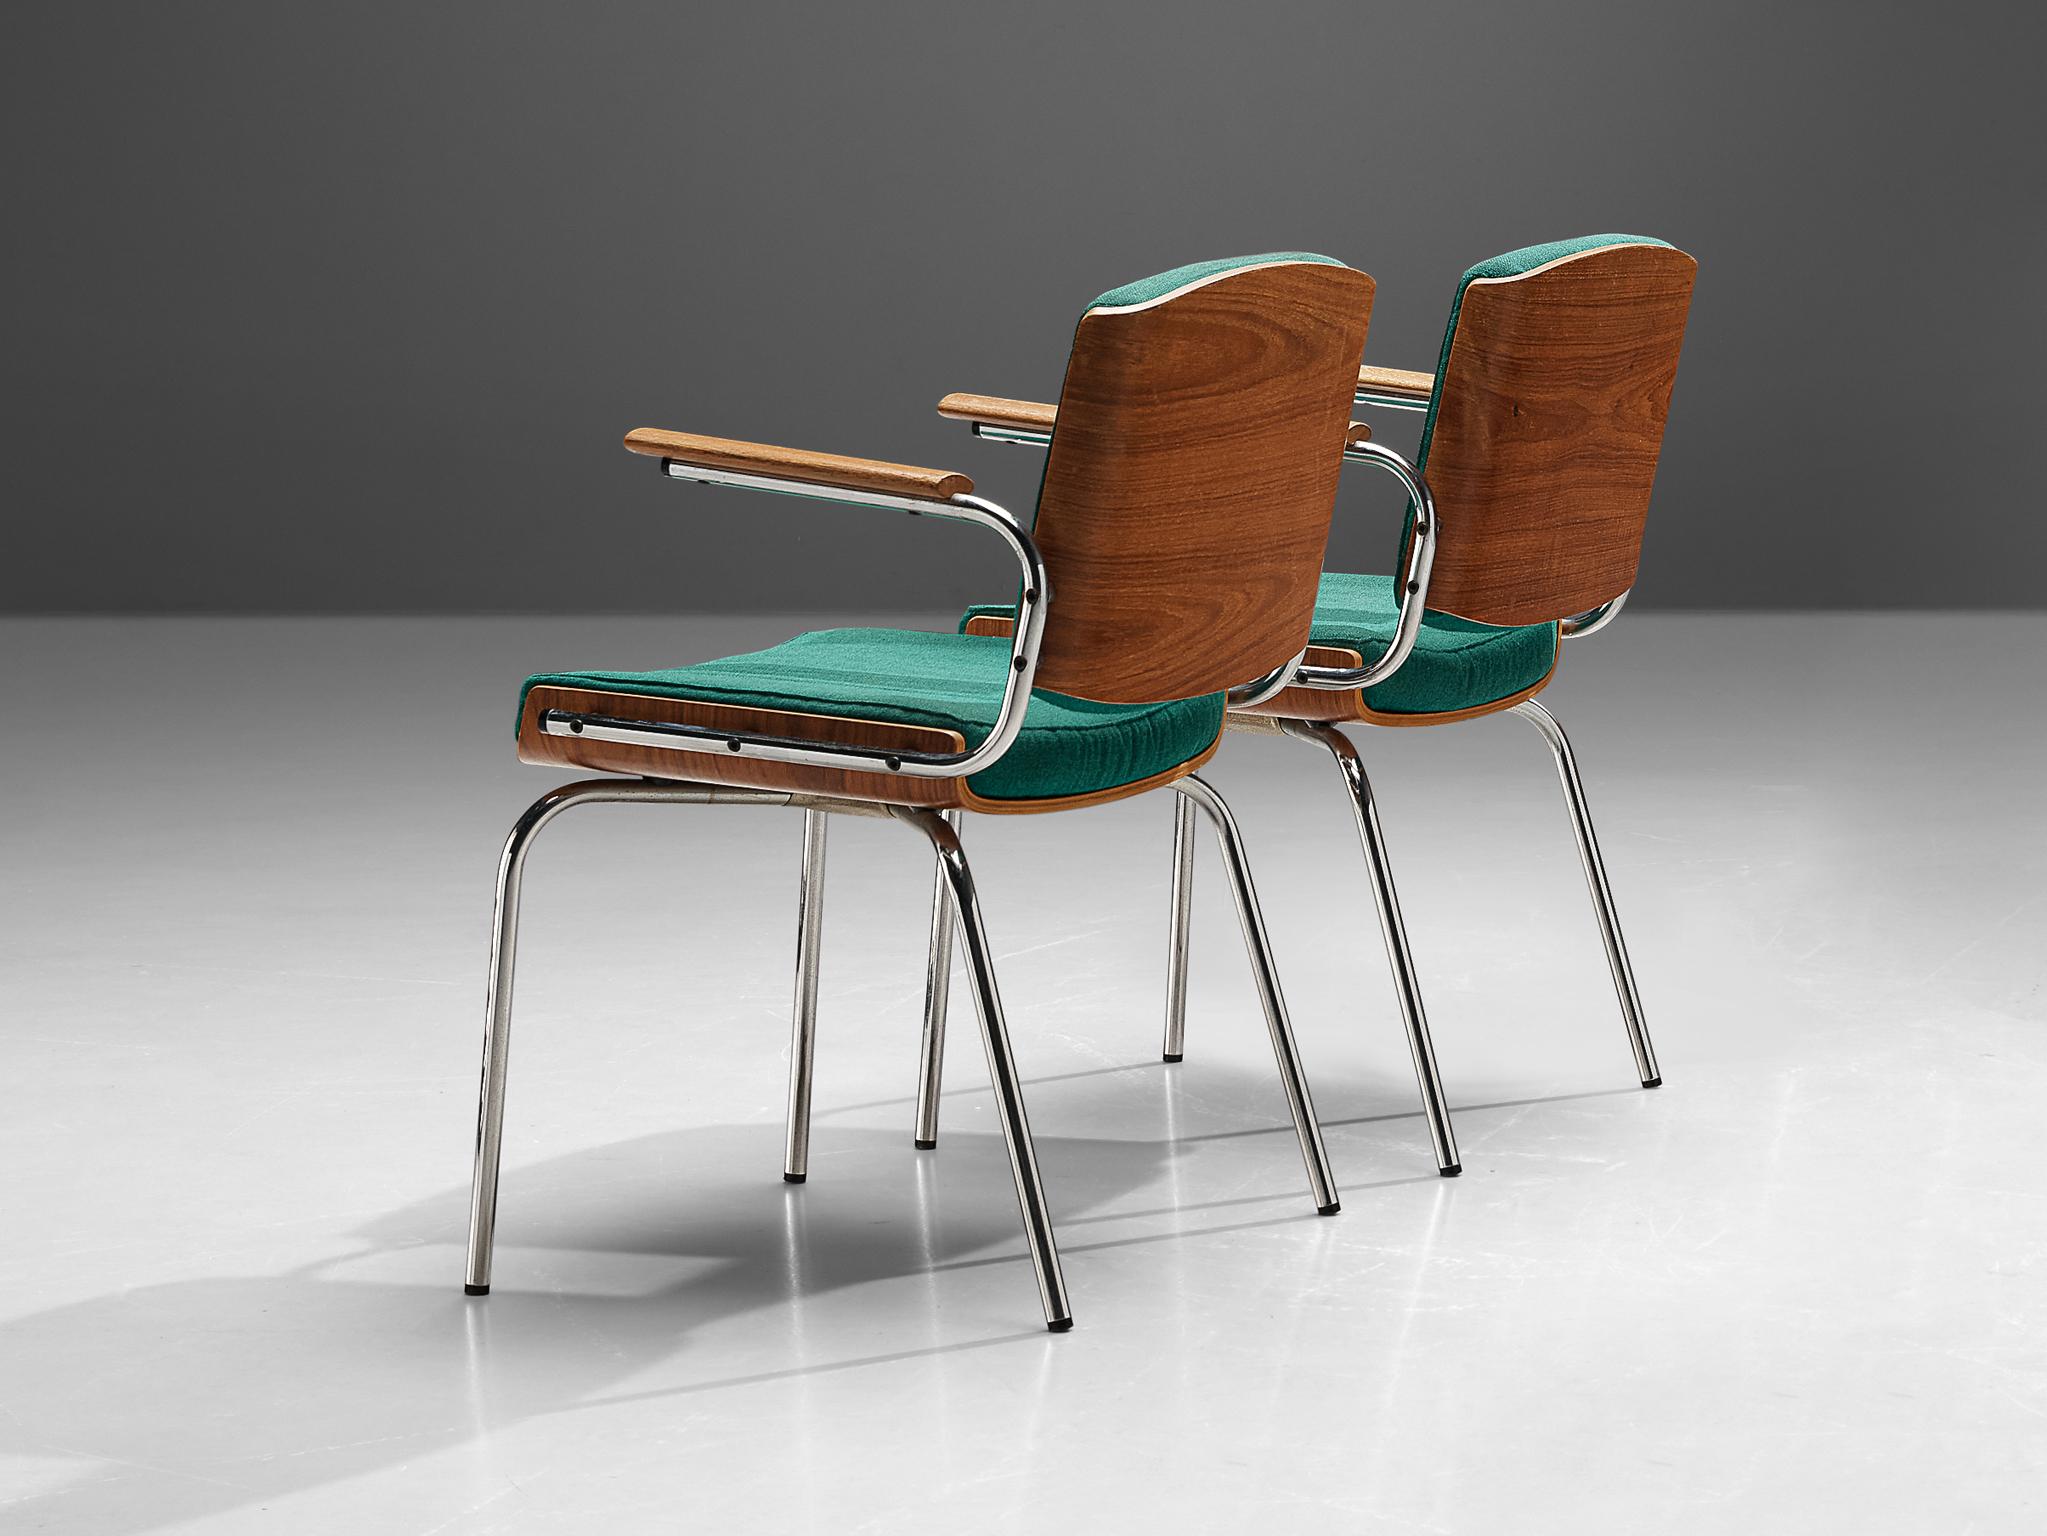 Duba, Paar Esszimmerstühle, Teak-Sperrholz, Stoff, verchromter Stahl, Dänemark, 1970er Jahre

Ein Paar dänische Stühle, hergestellt von Duba. Das Design zeichnet sich durch eine auffällige Kombination von MATERIALEN und Texturen aus. Die Rückseite